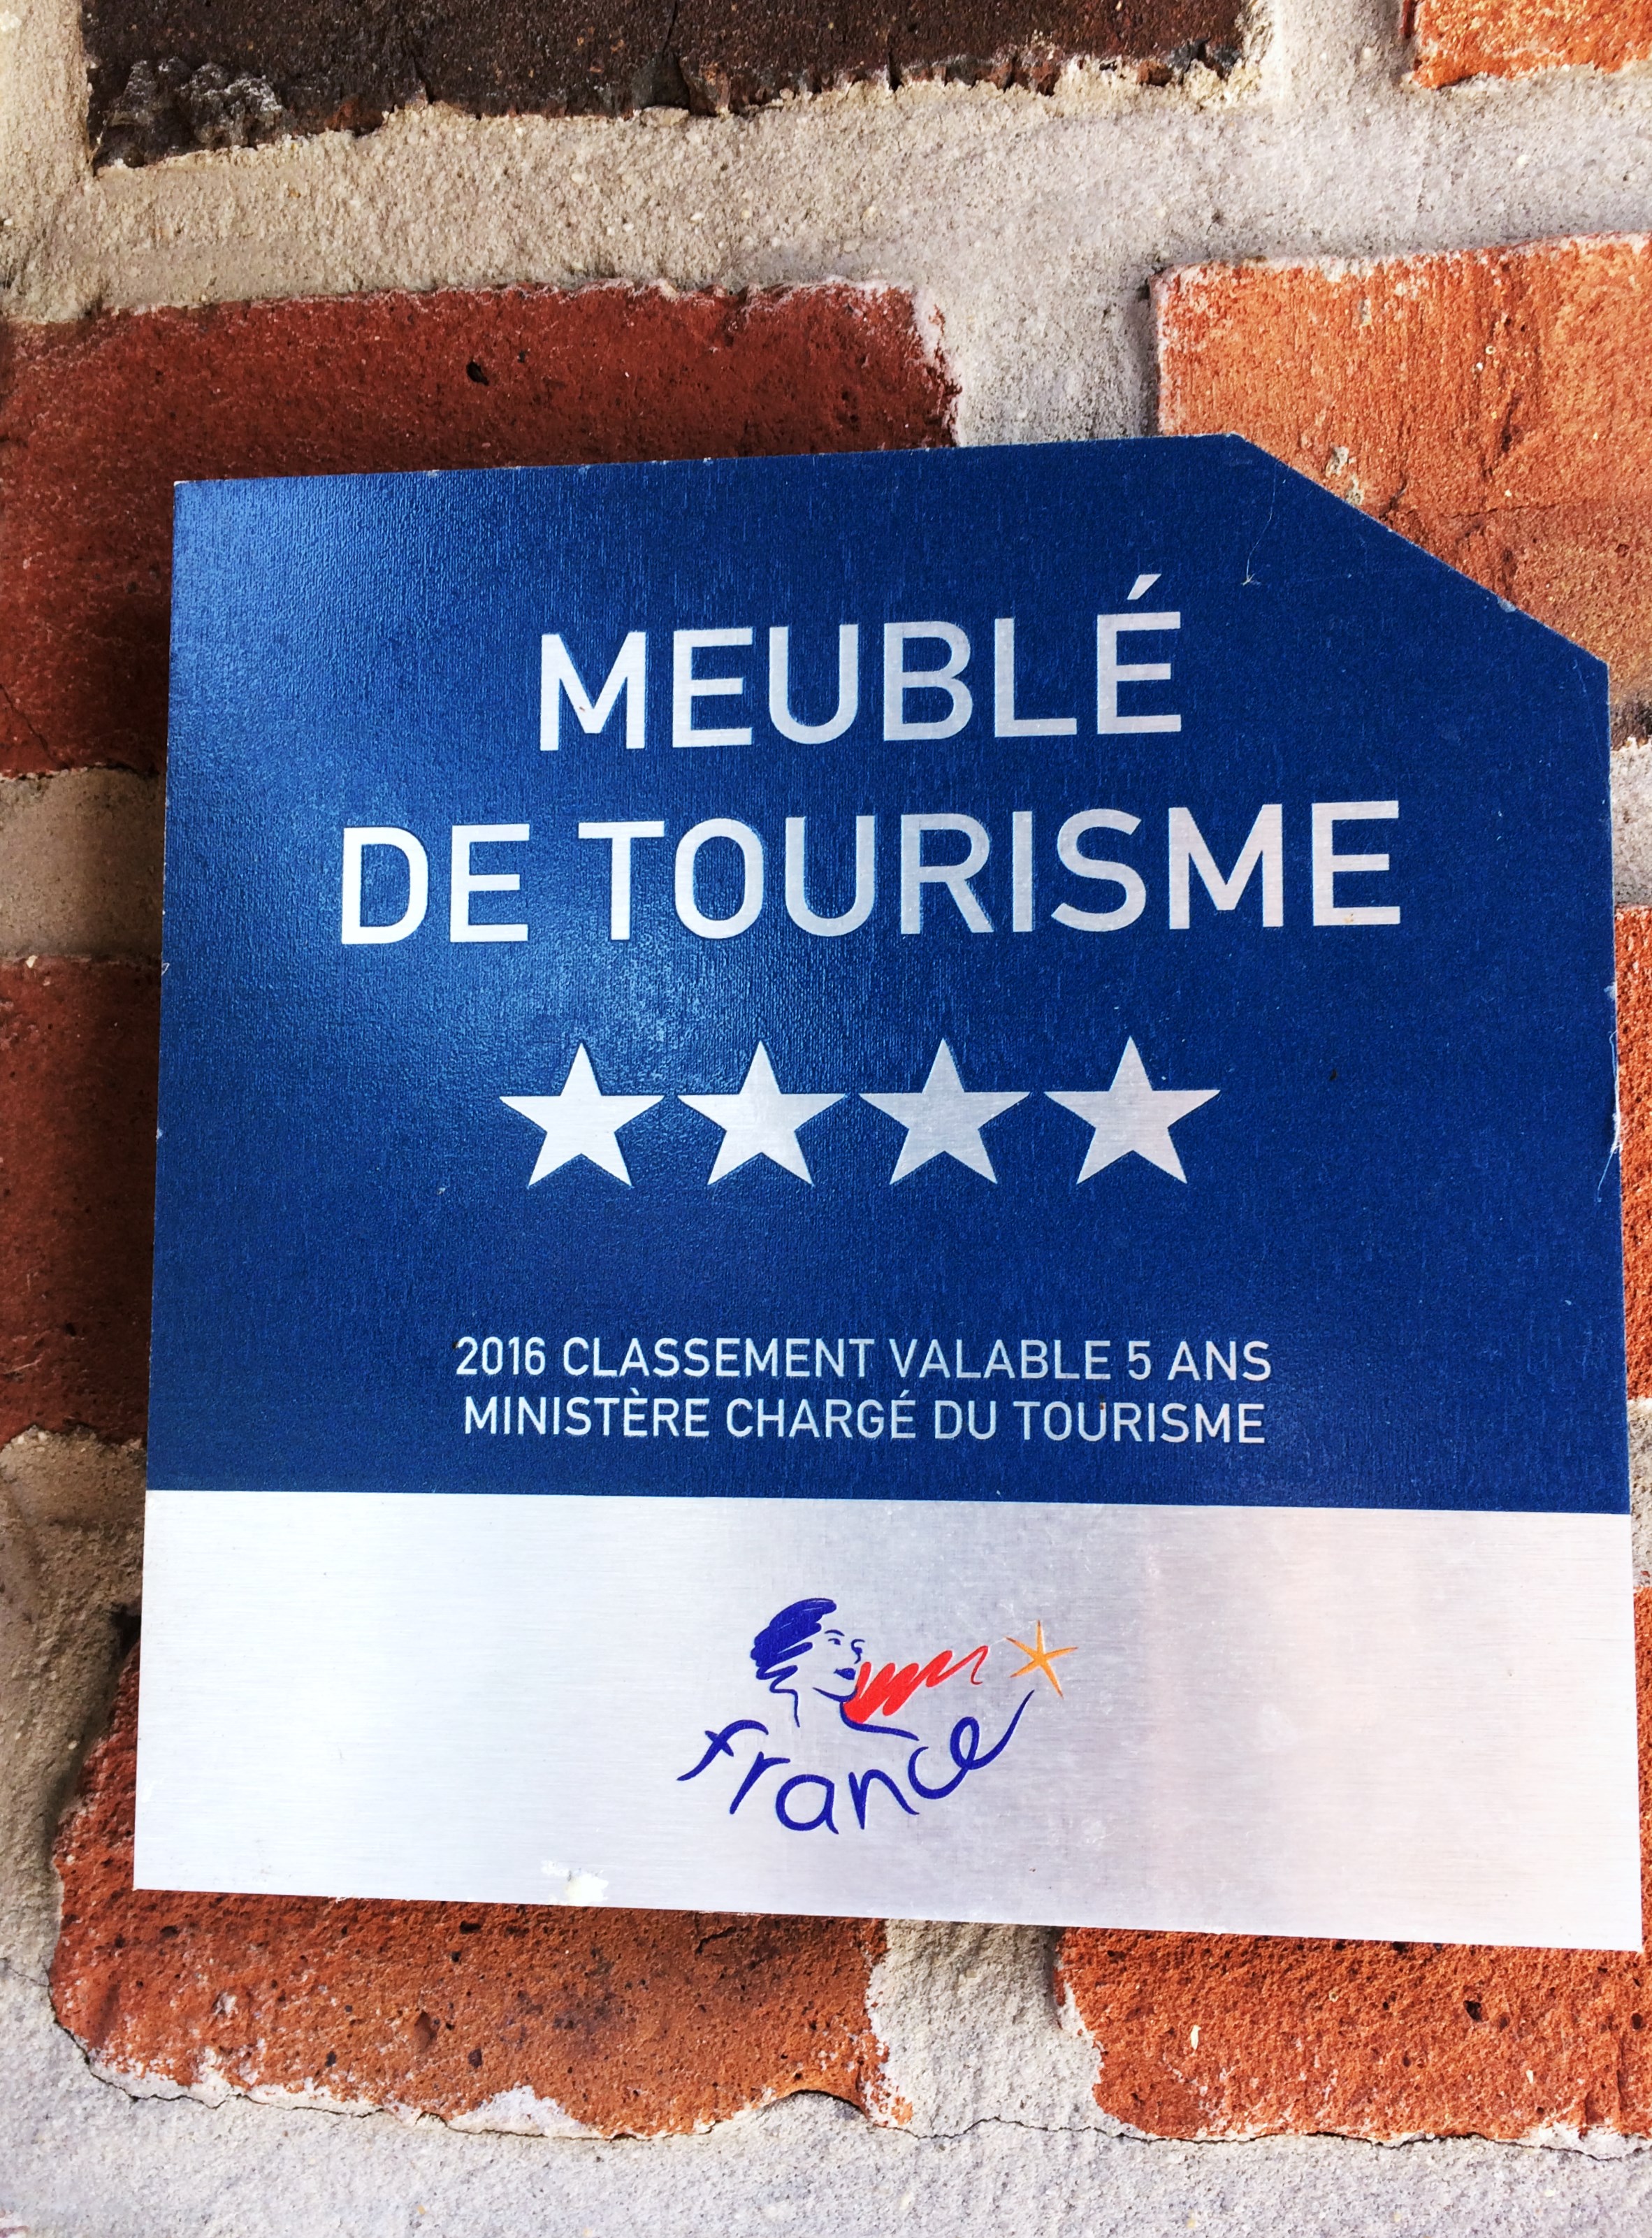 Hébergement  classée 4 étoiles en meublé de tourisme et labellisé aux gites de France.